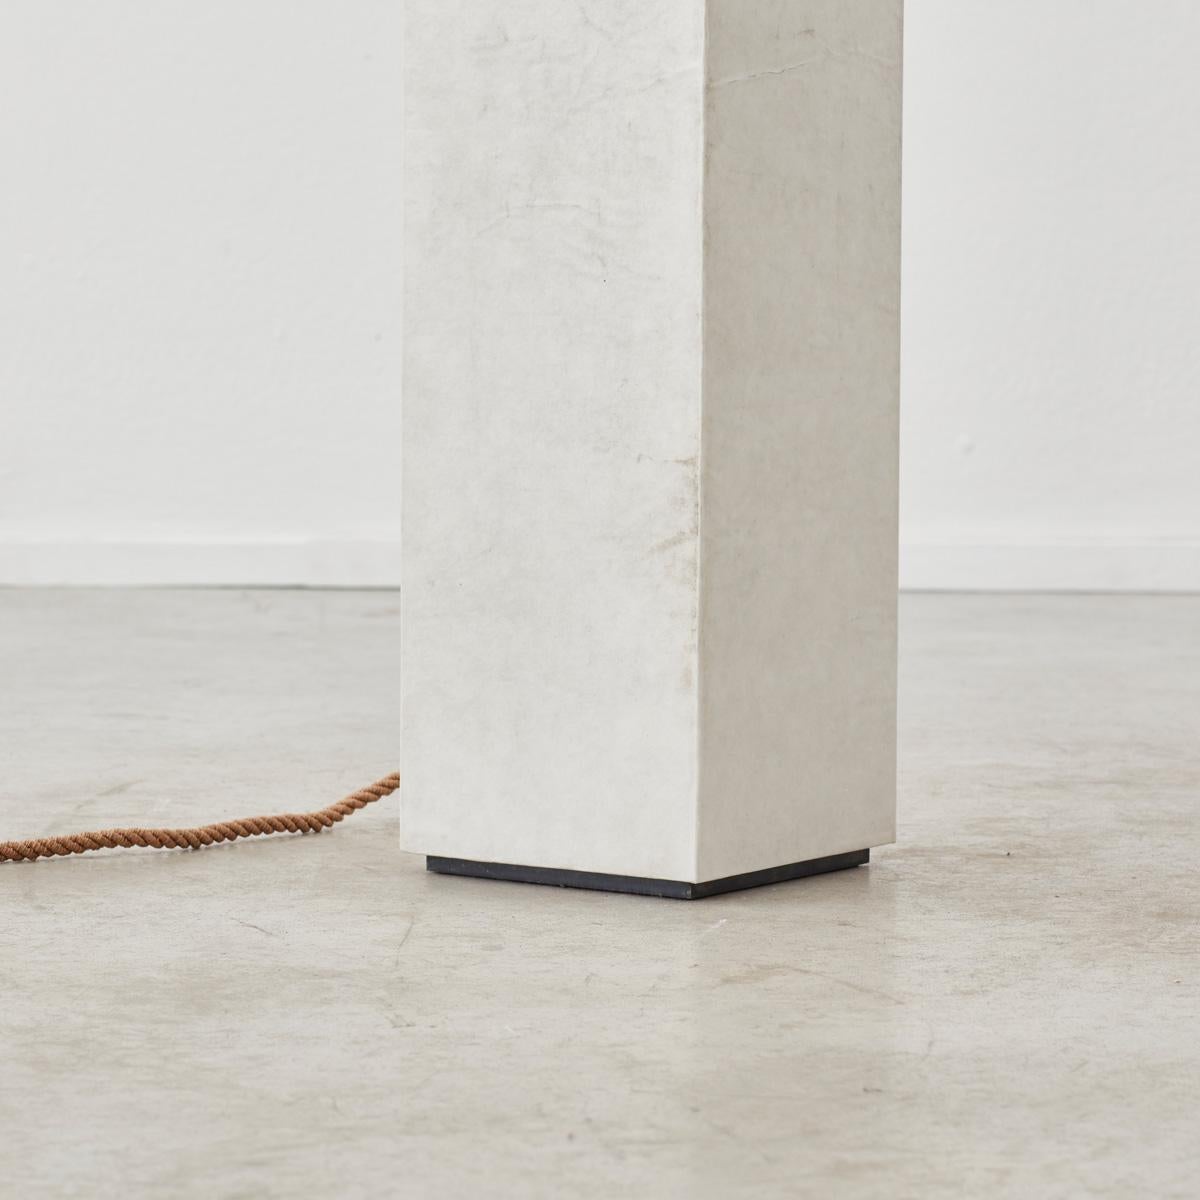 David Horan Paper floor light in polished finish for Béton Brut, UK, 2022 For Sale 4